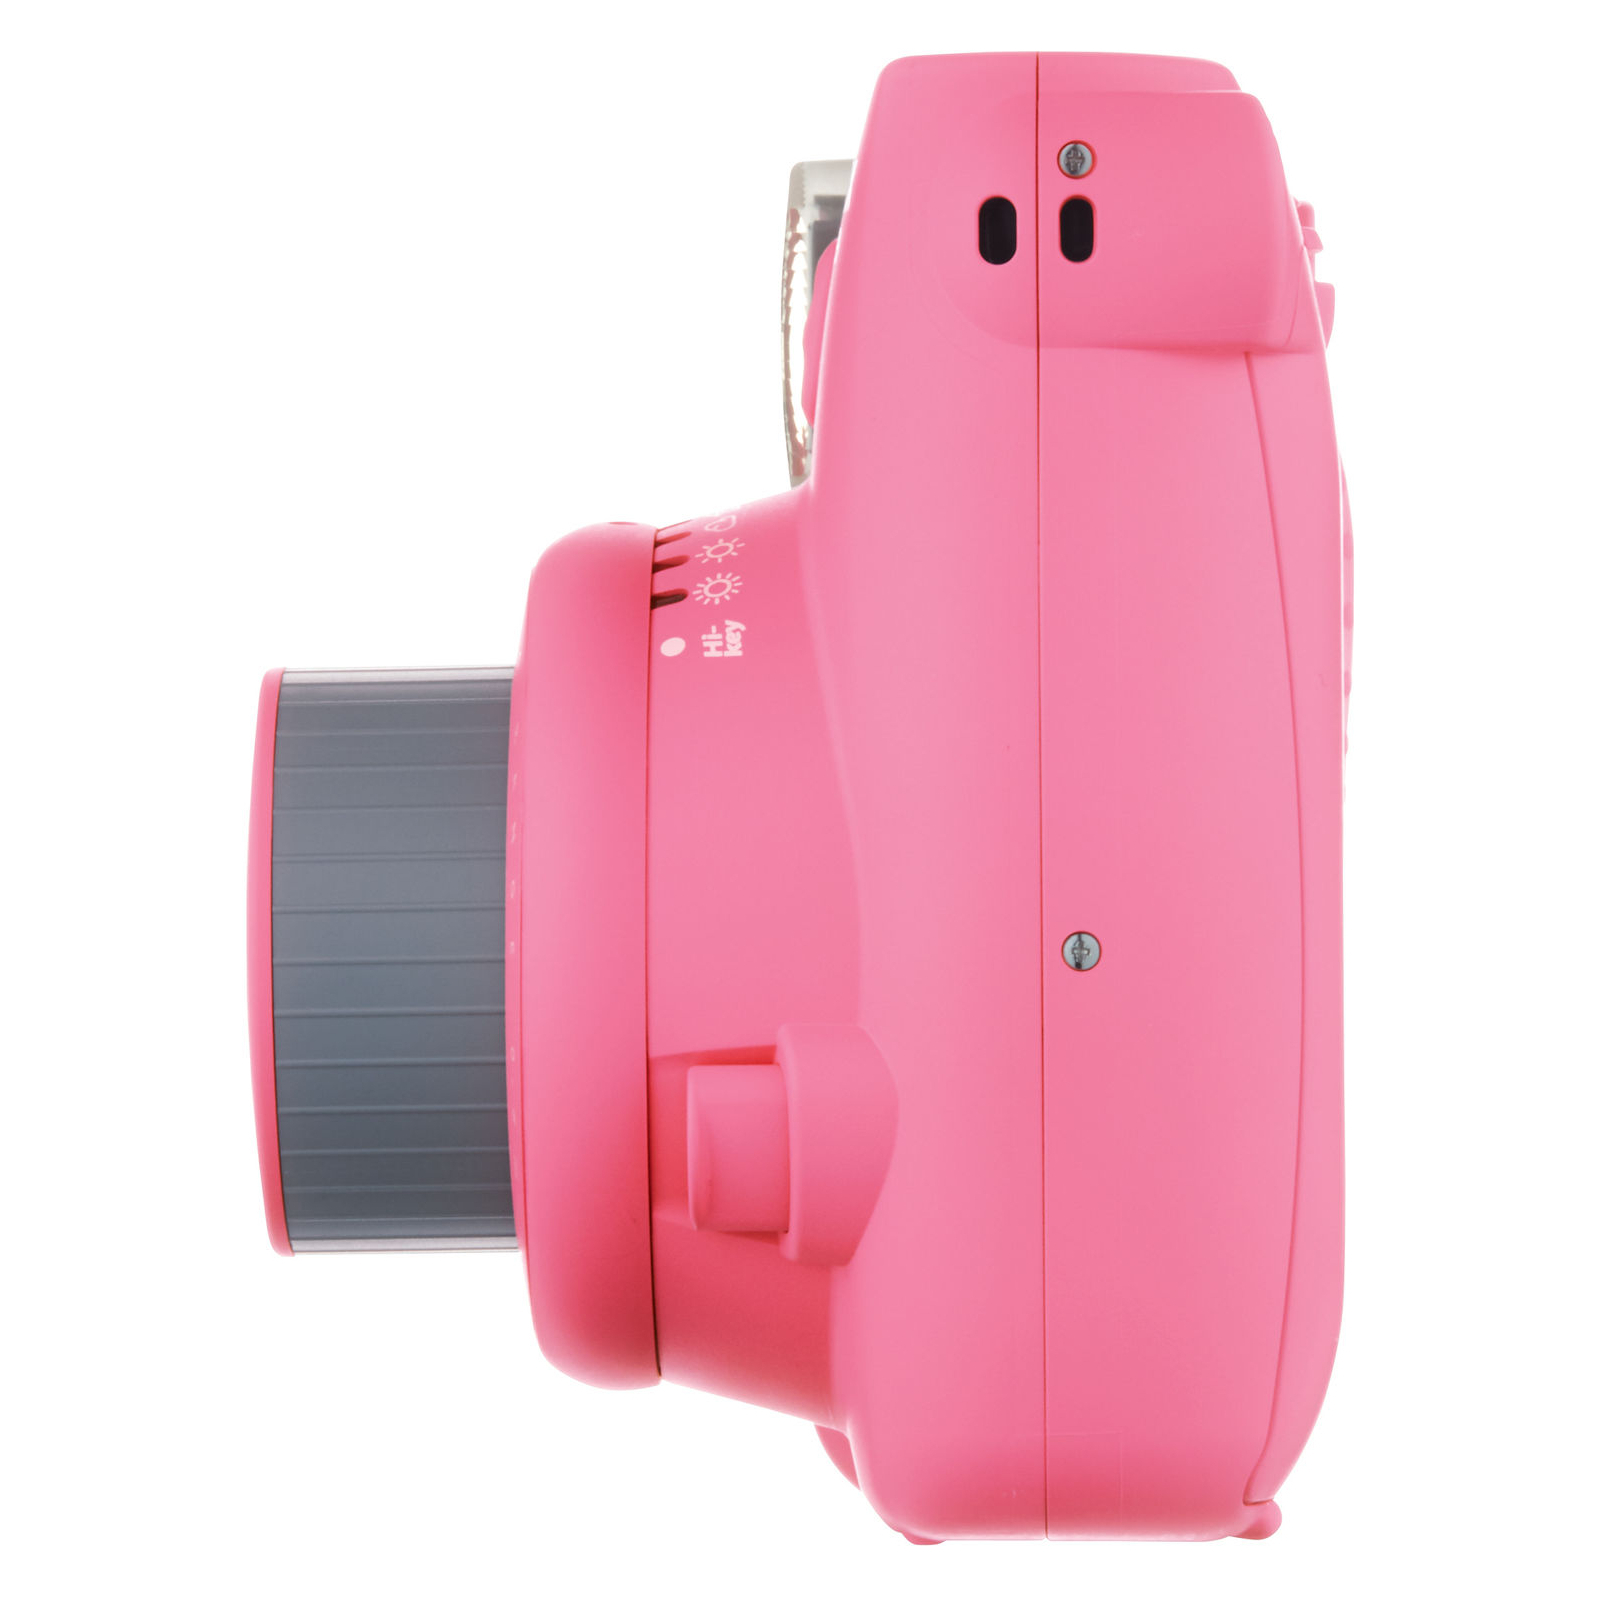 Камера миттєвого друку Fujifilm INSTAX Mini 9 Flamingo Pink (16550784) зображення 3